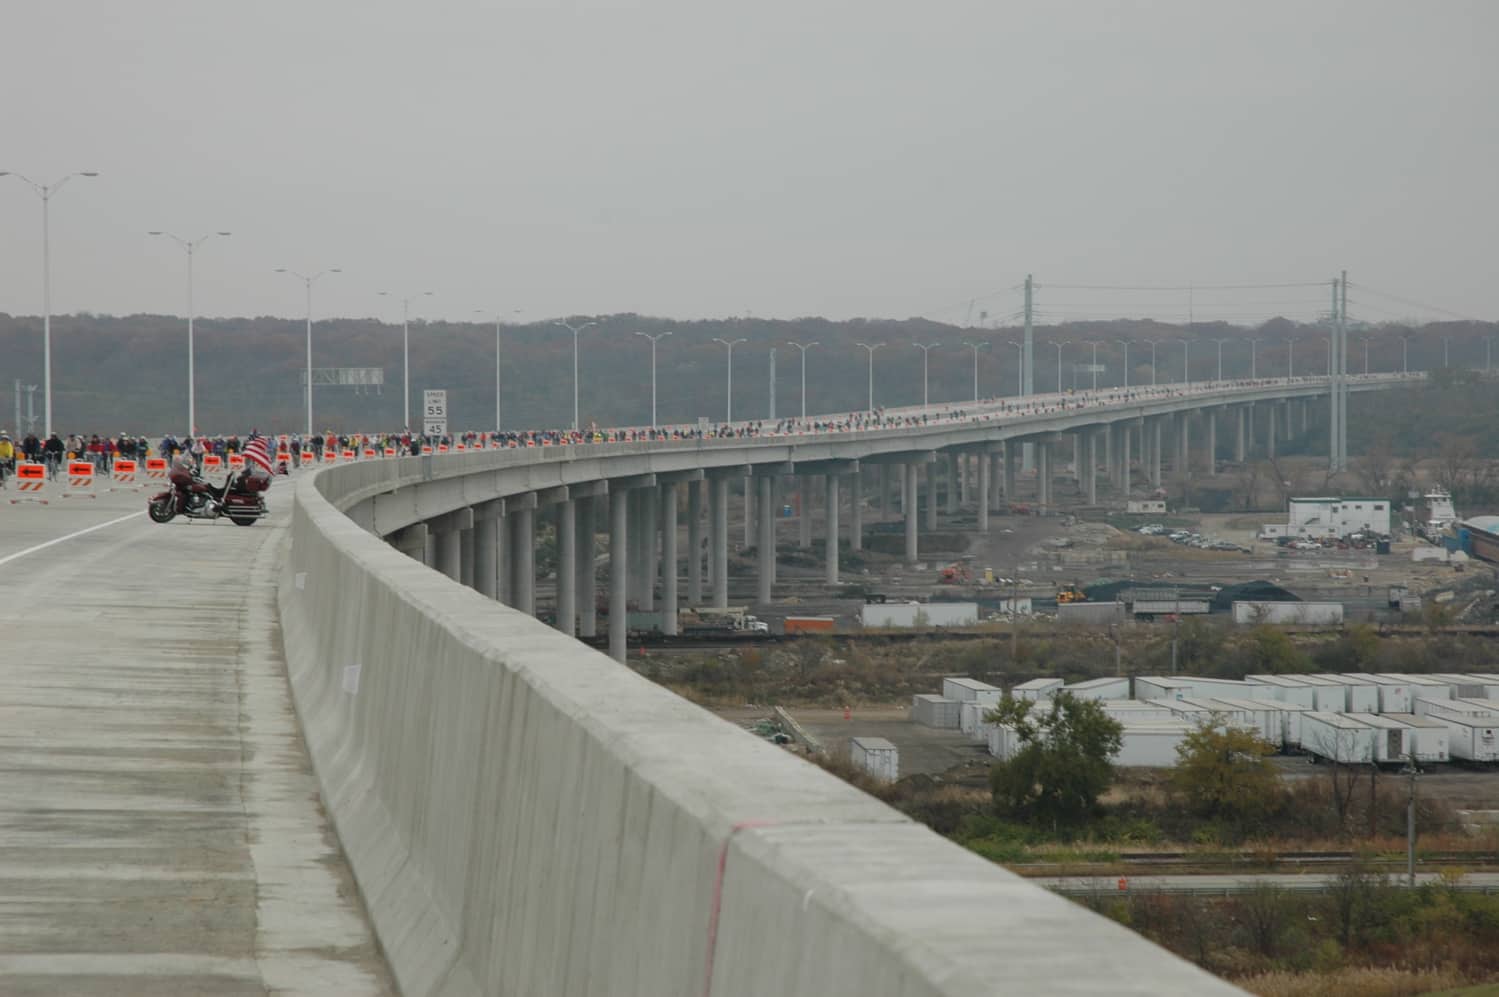 Des Plaines River Valley Bridge: terzo dei 15 ponti più lunghi dell'Illinois